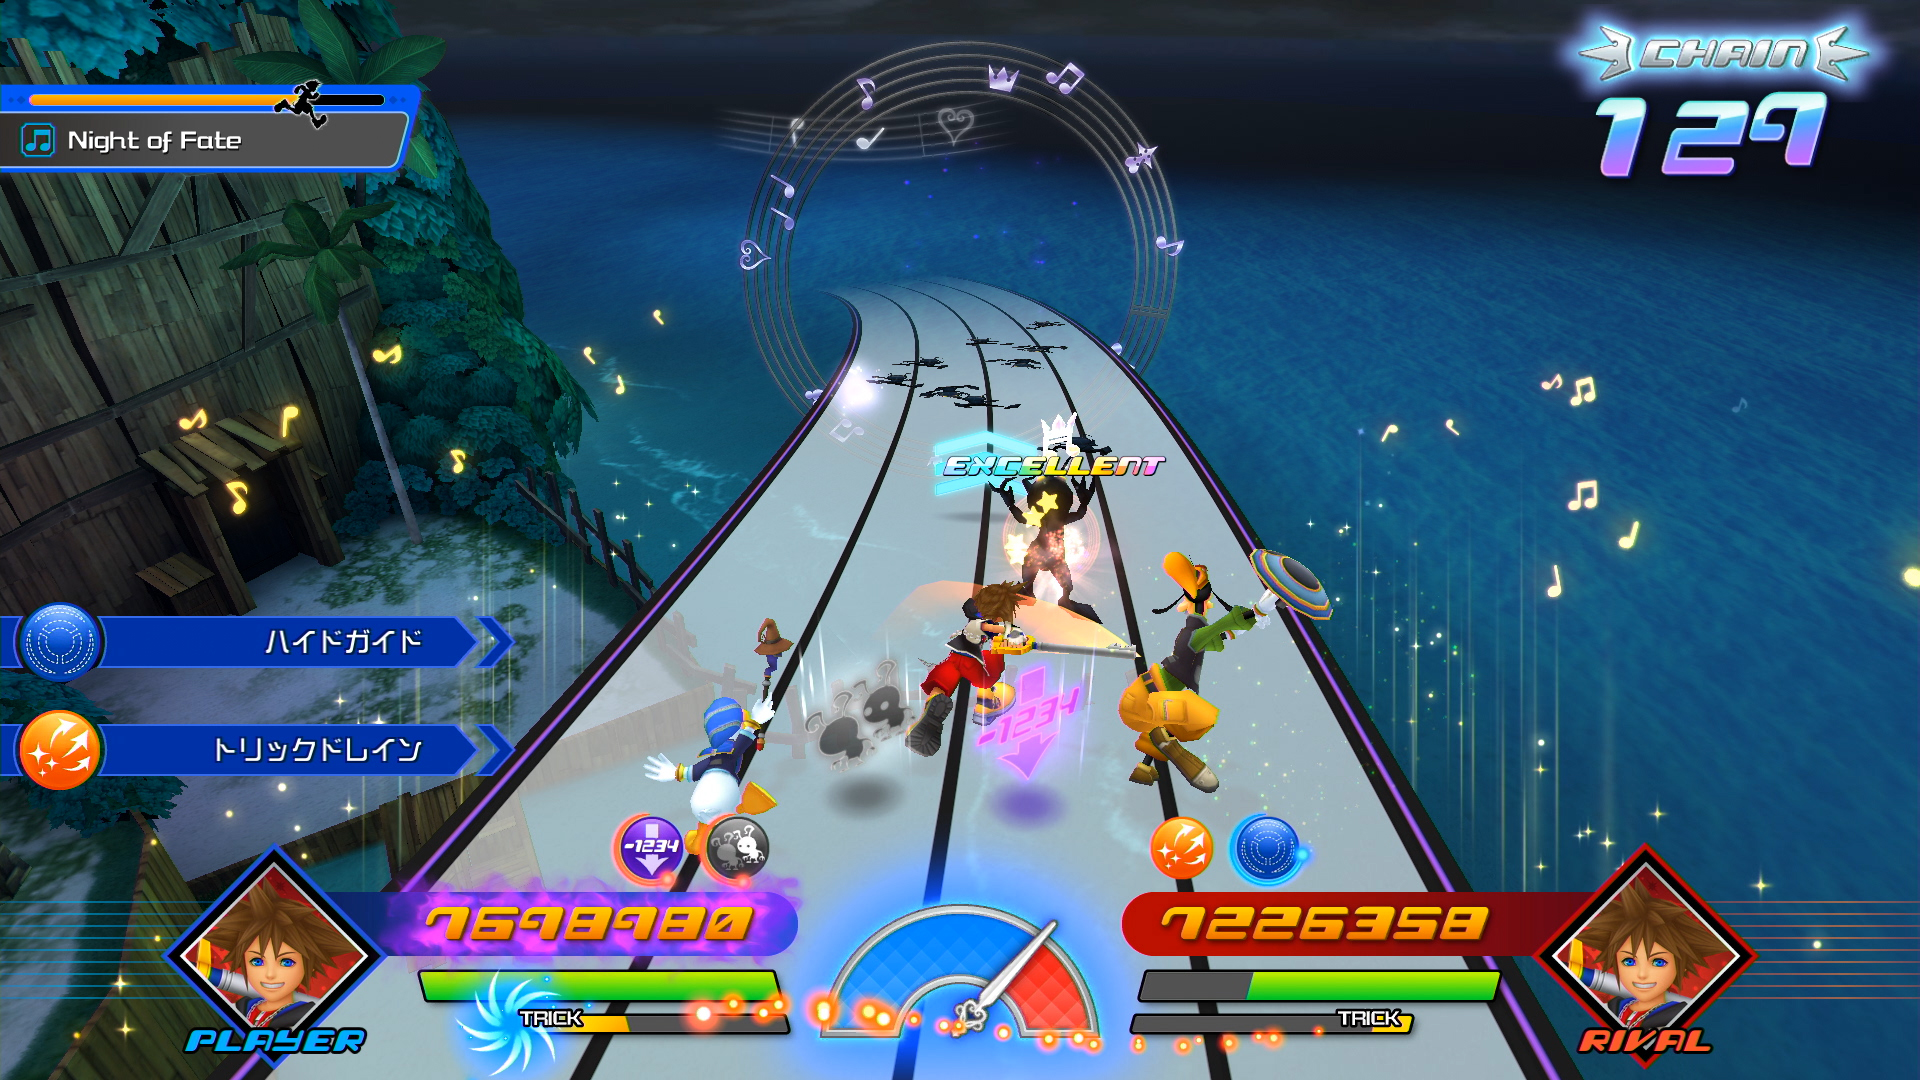 Kingdom Hearts: Melody of Memory screenshots show main menus and